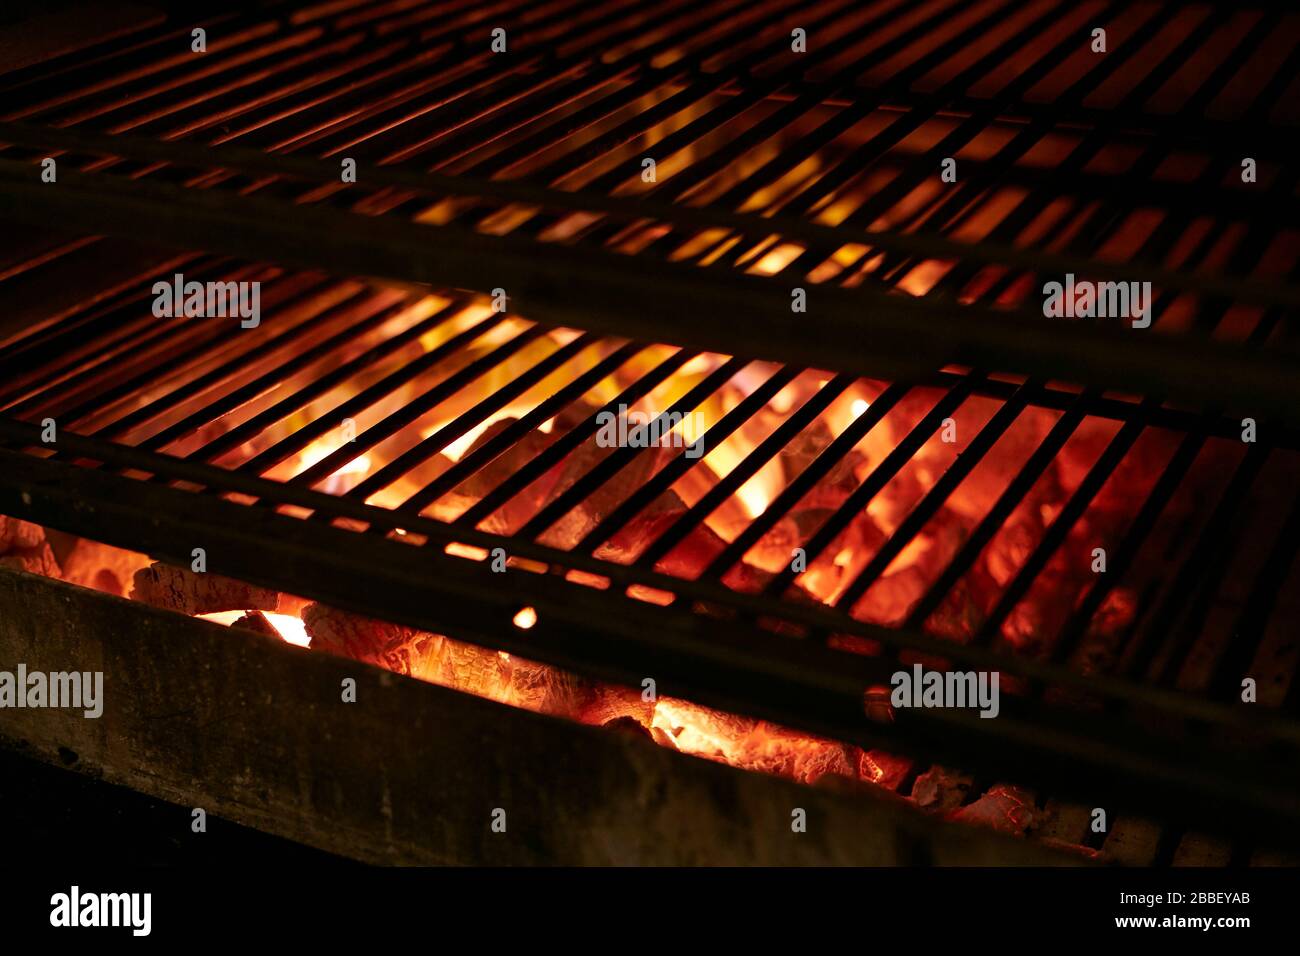 Parrilla barbacoa caliente carbón caliente brillan calor caliente Foto de stock